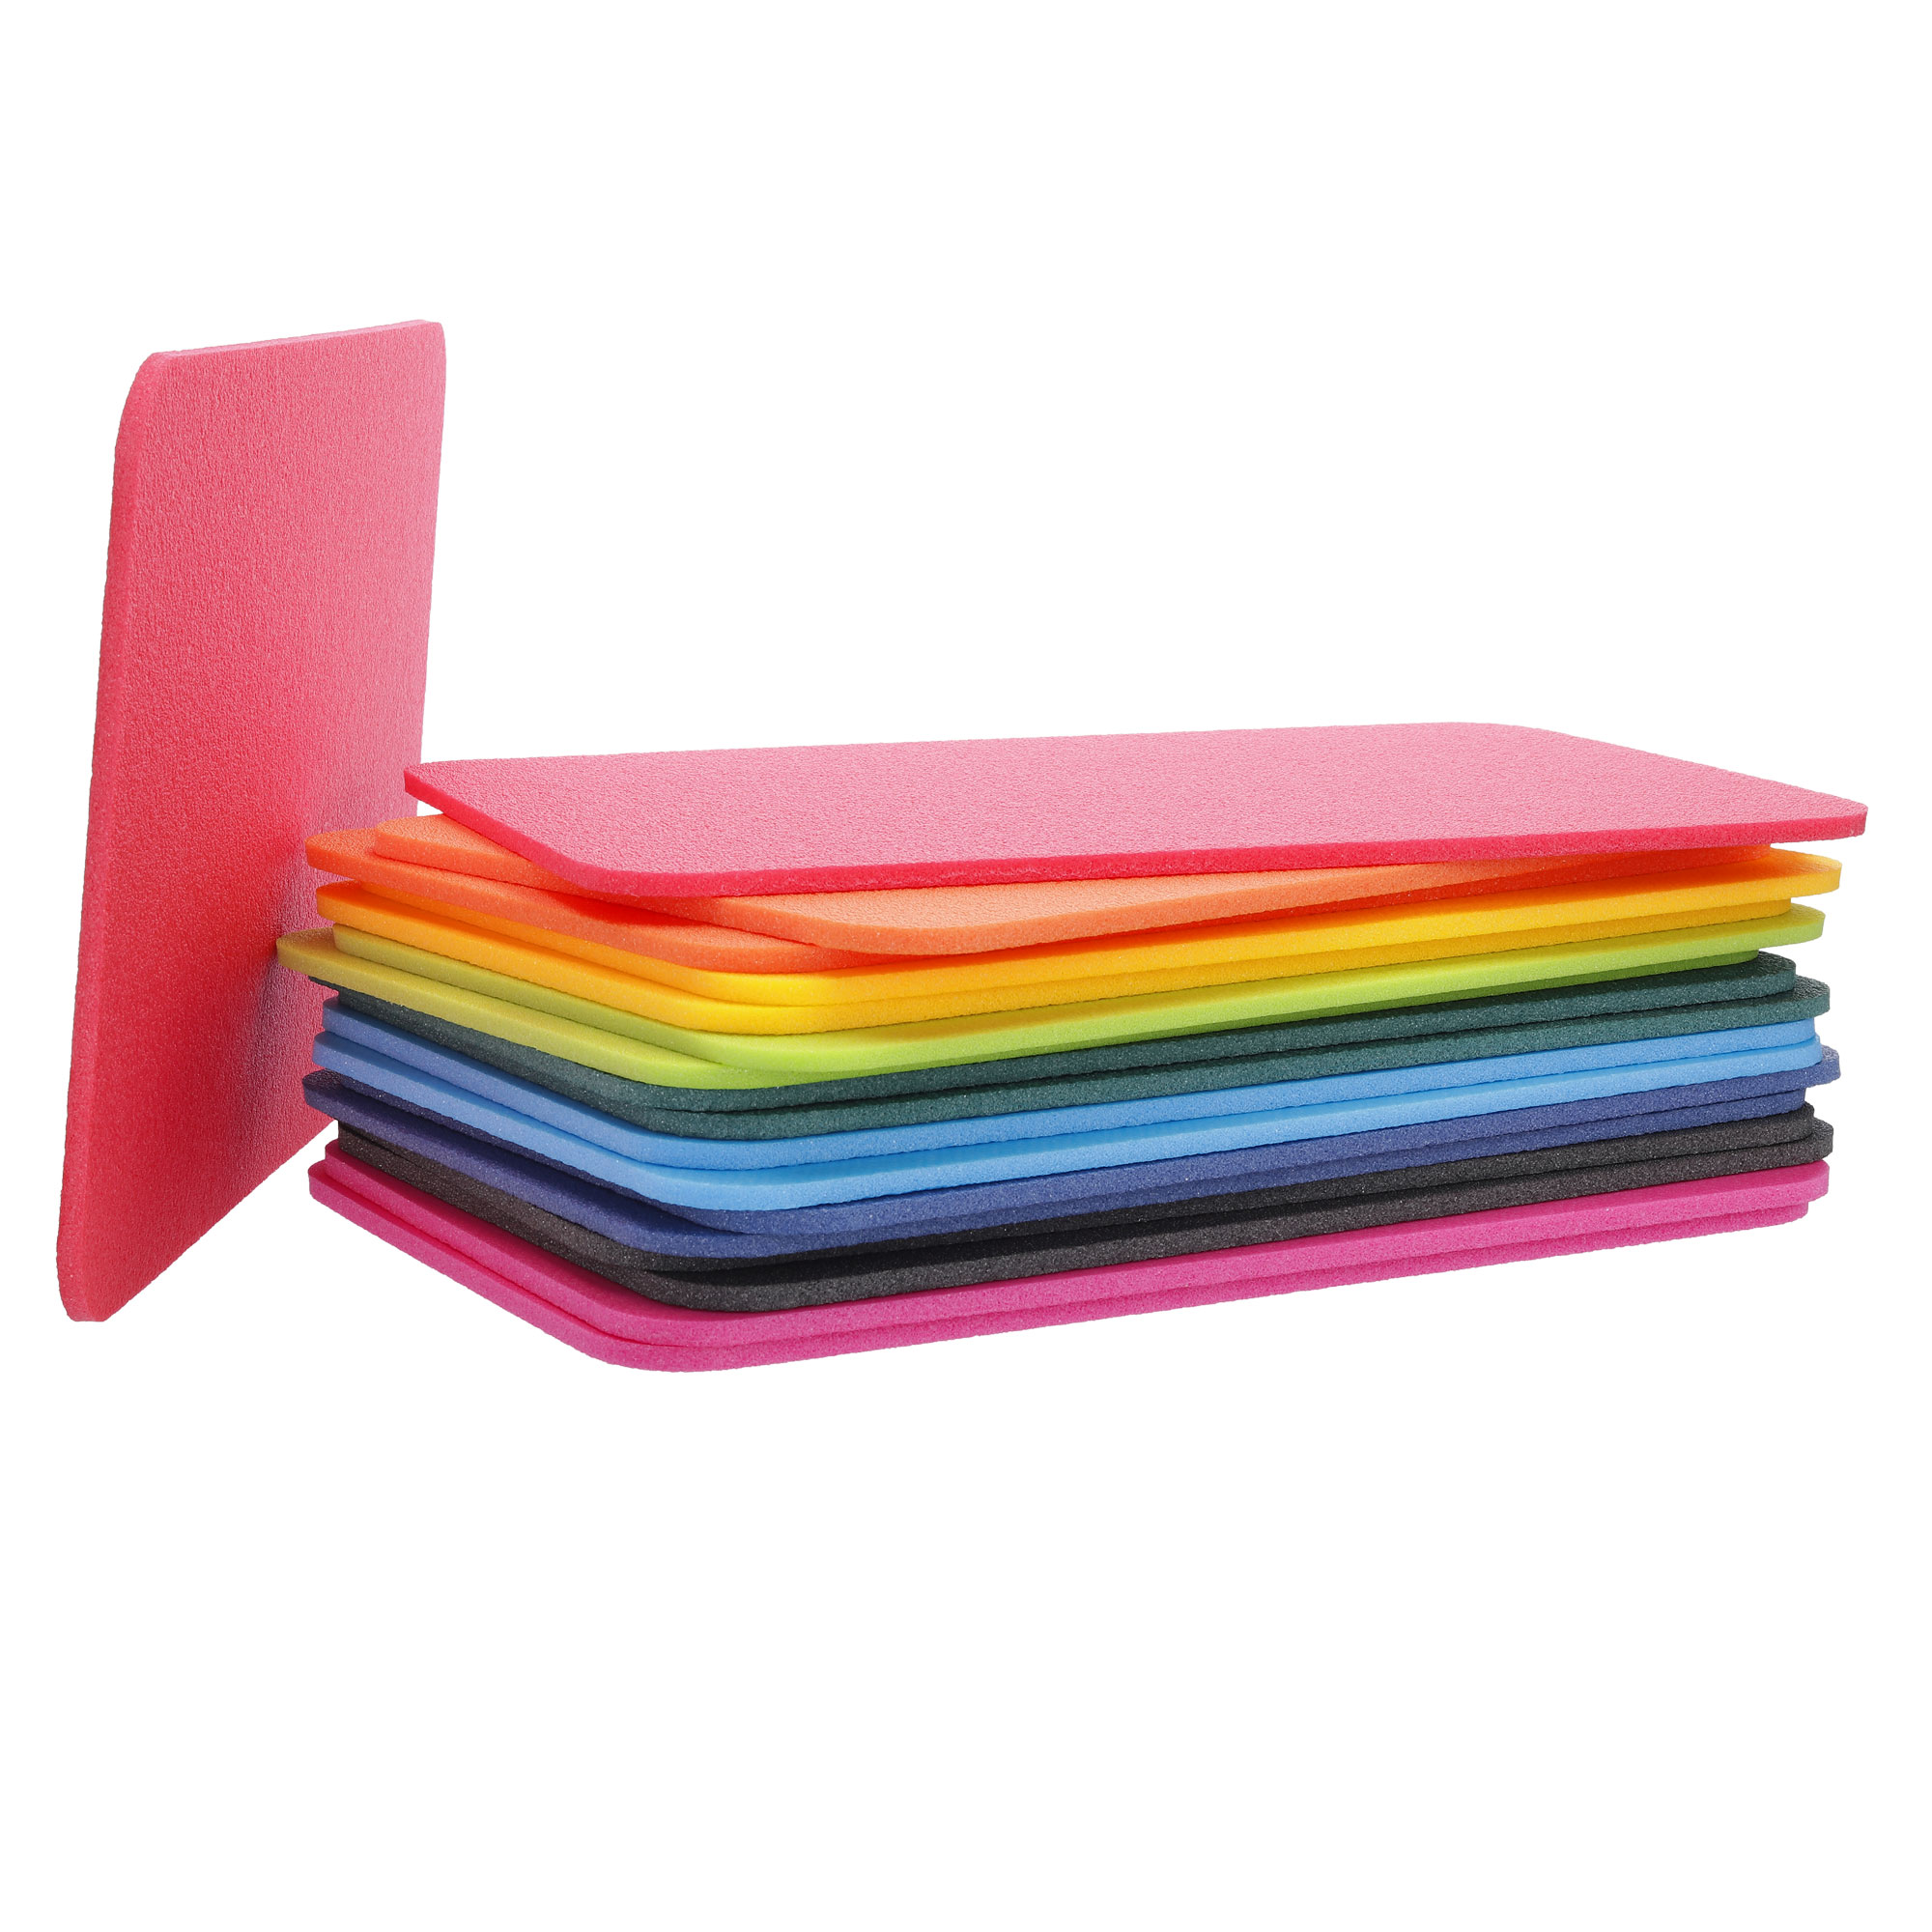 Yate Schaumstoff Sitzkissen in Regenbogenfarben viereckig ohne